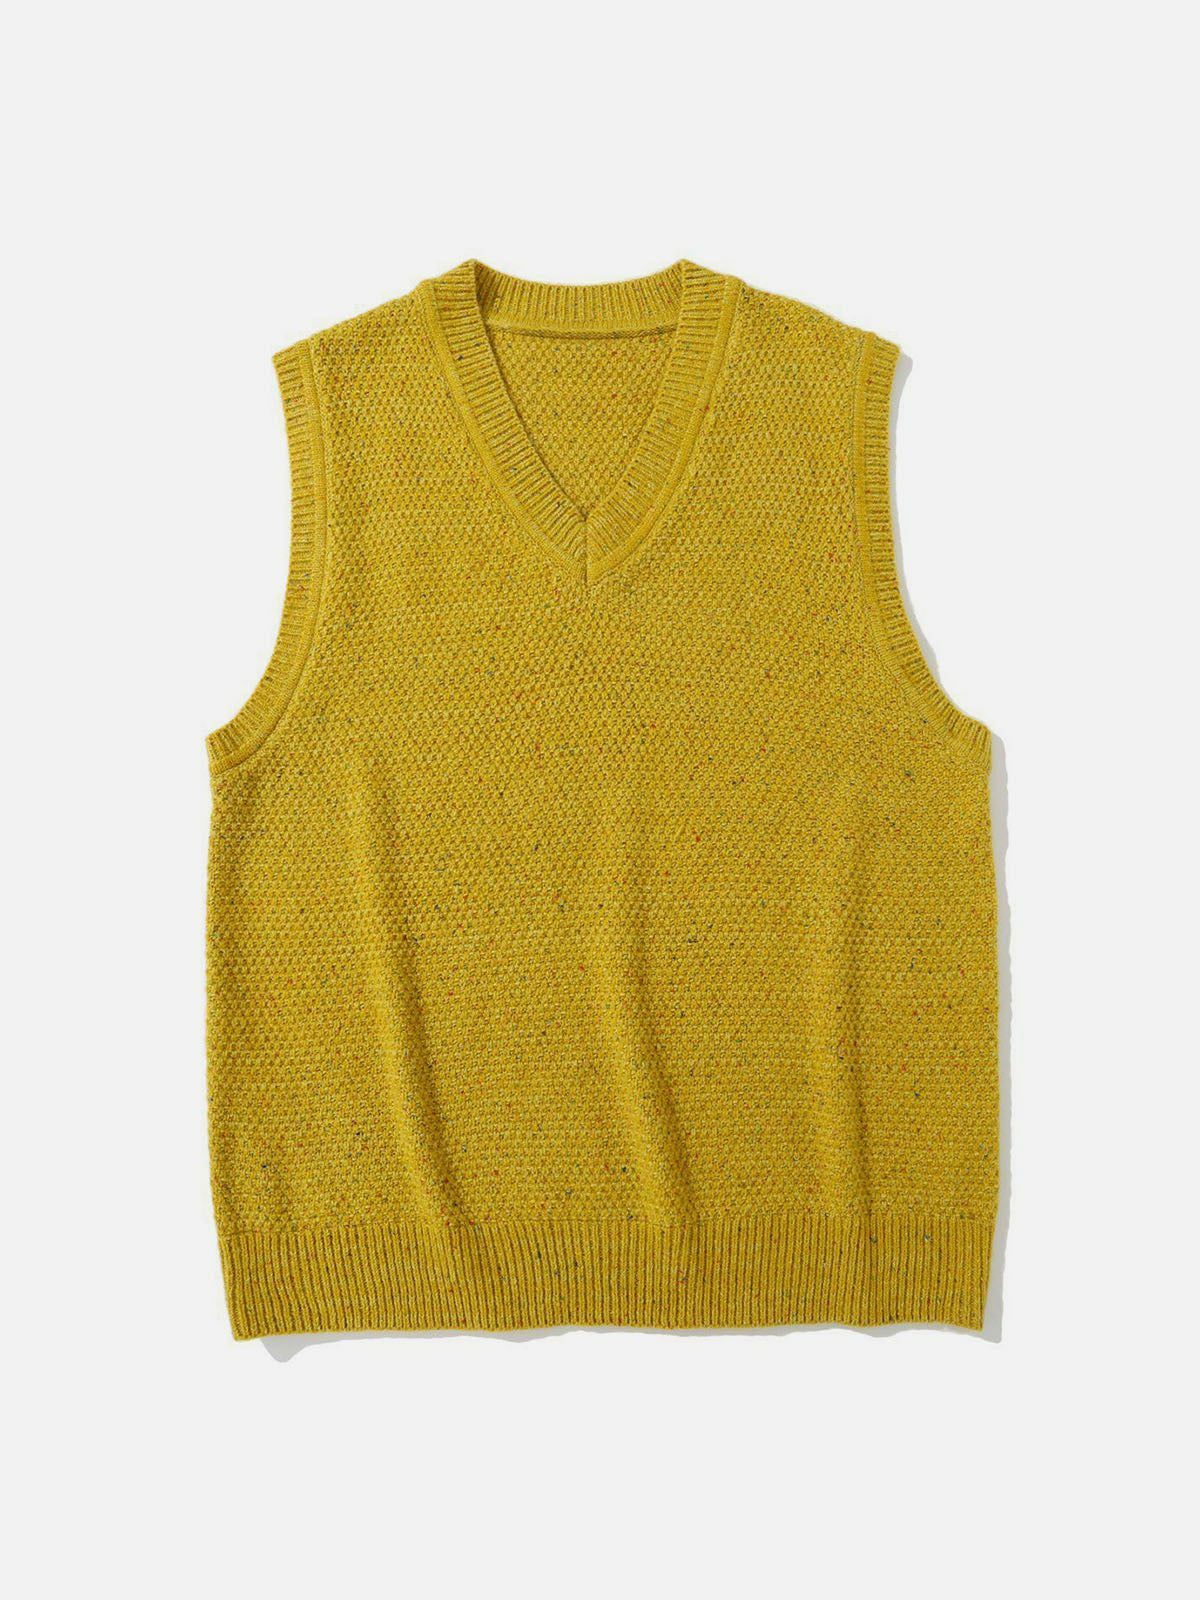 y2k vintage sweater vest edgy streetwear essential 7610